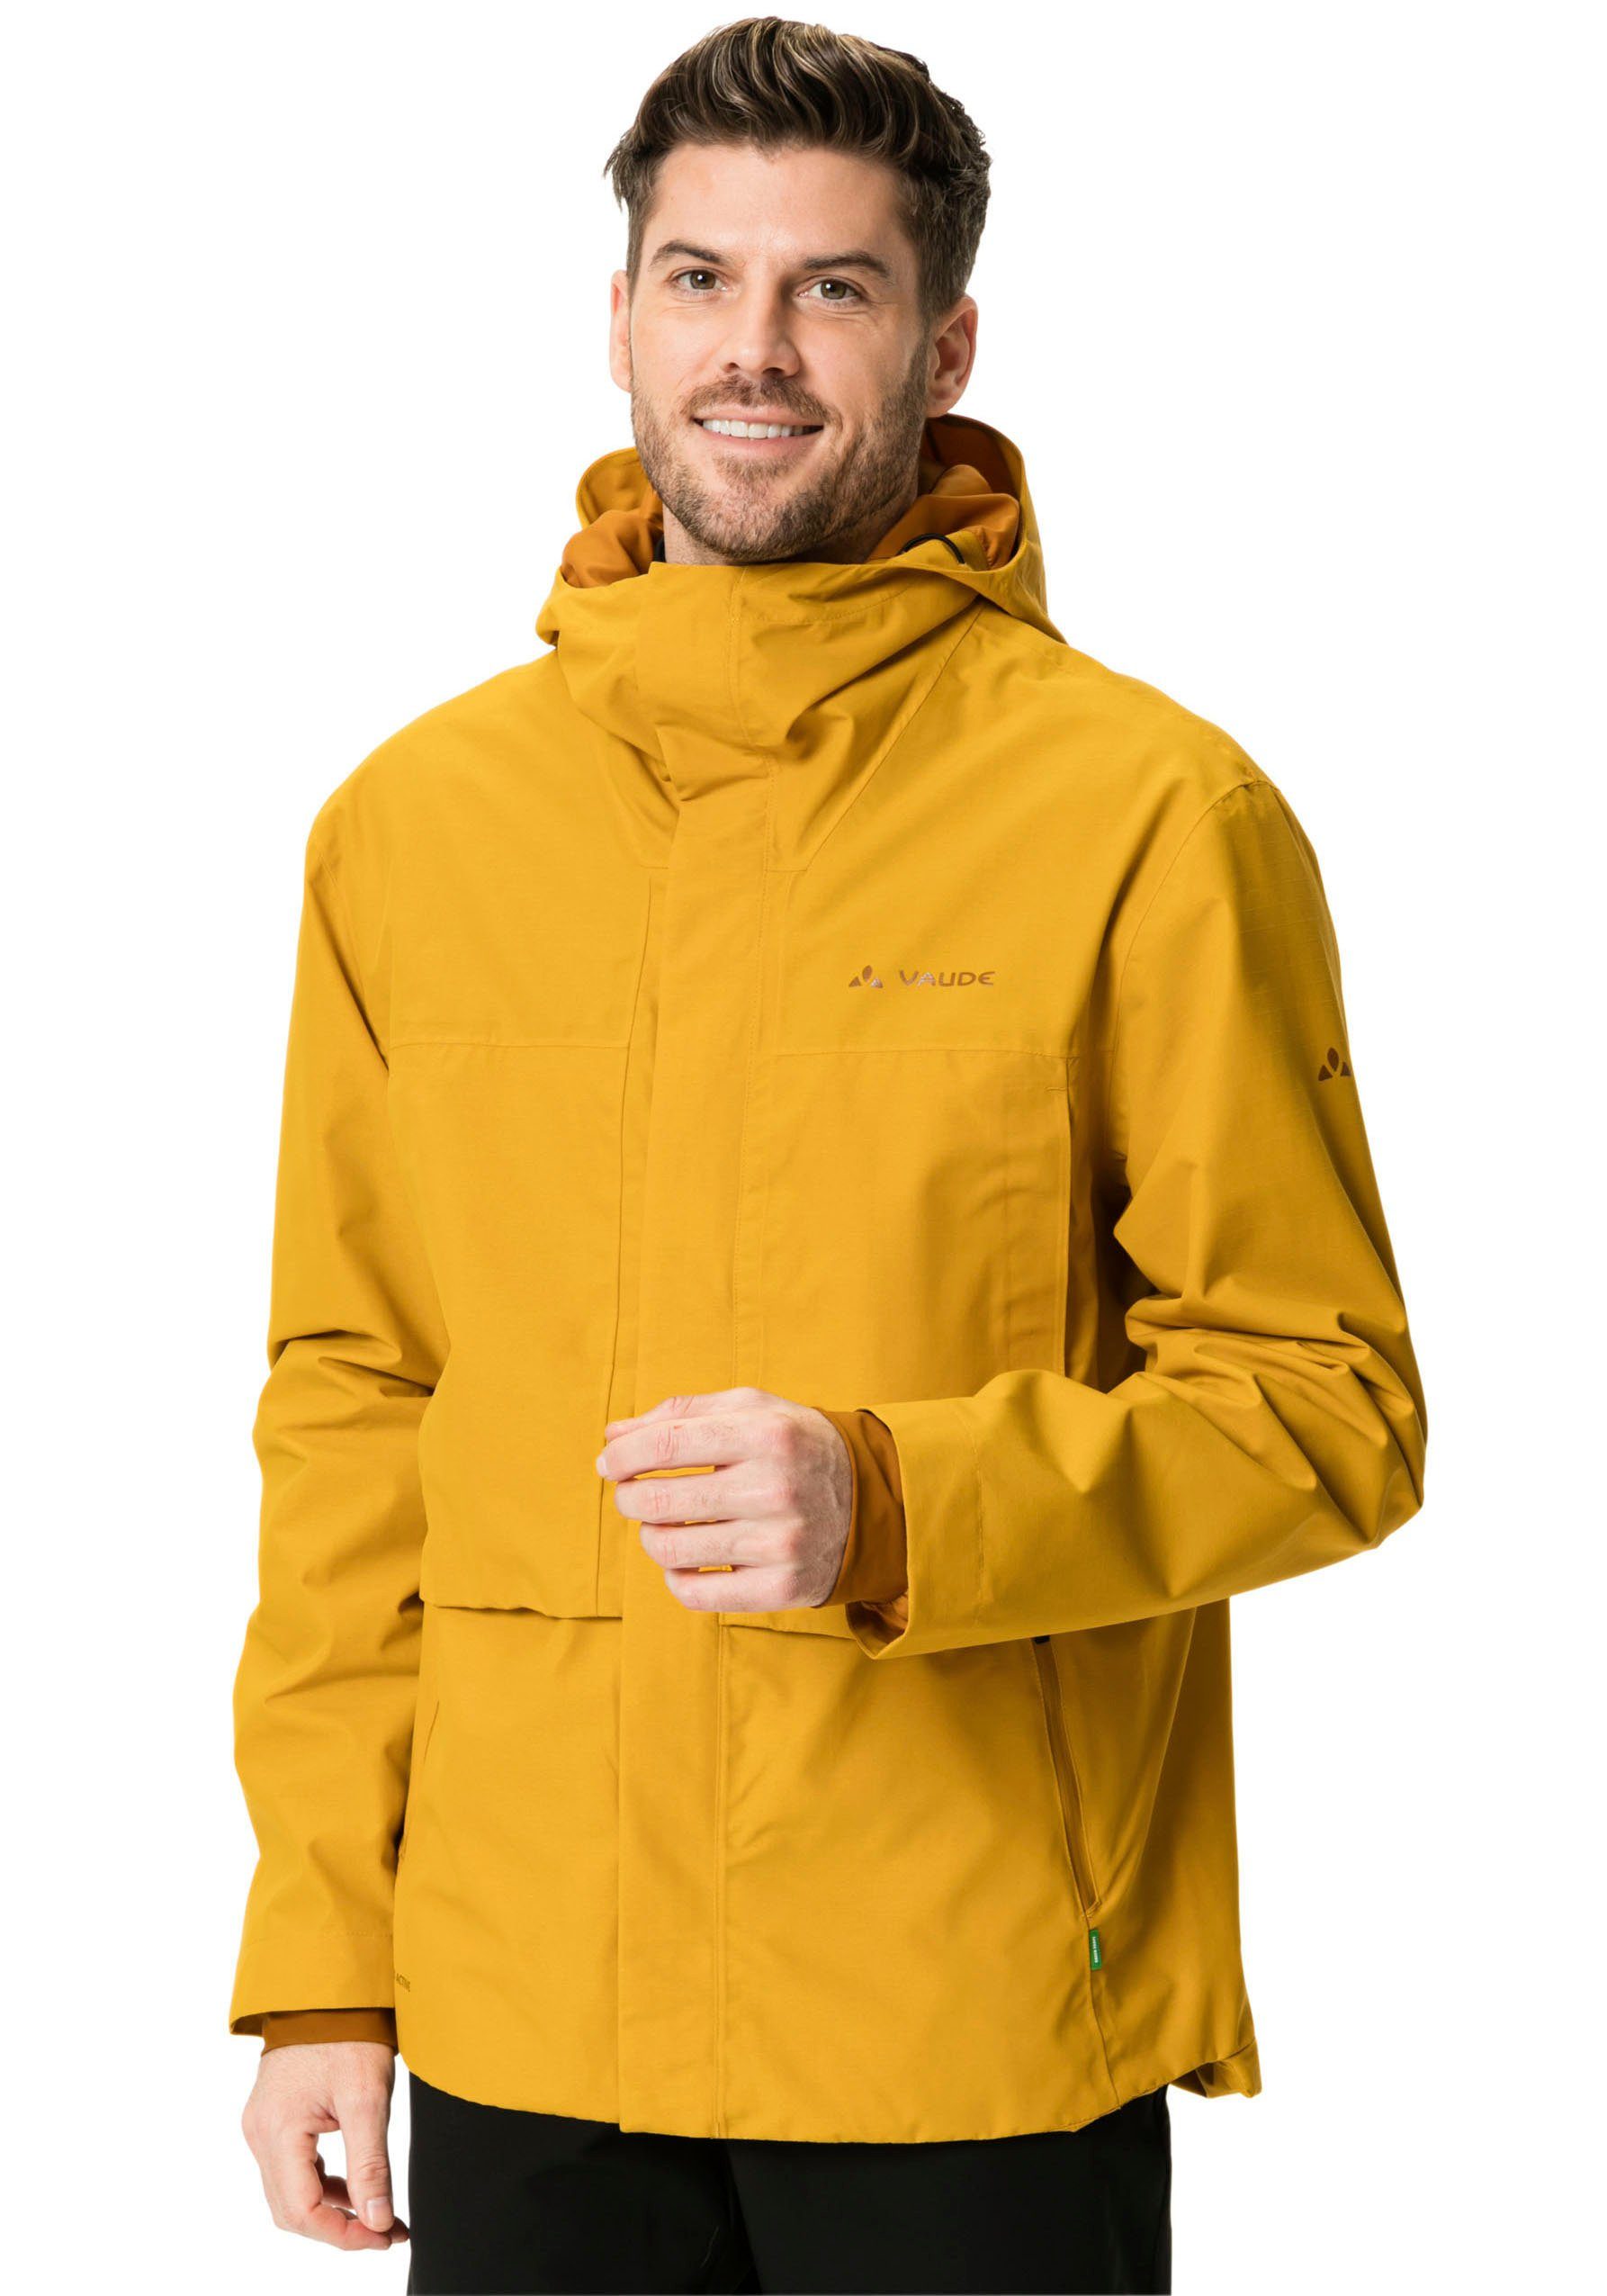 Rain burnt VAUDE Men's Comyou yellow Regenjacke Pro Jacket